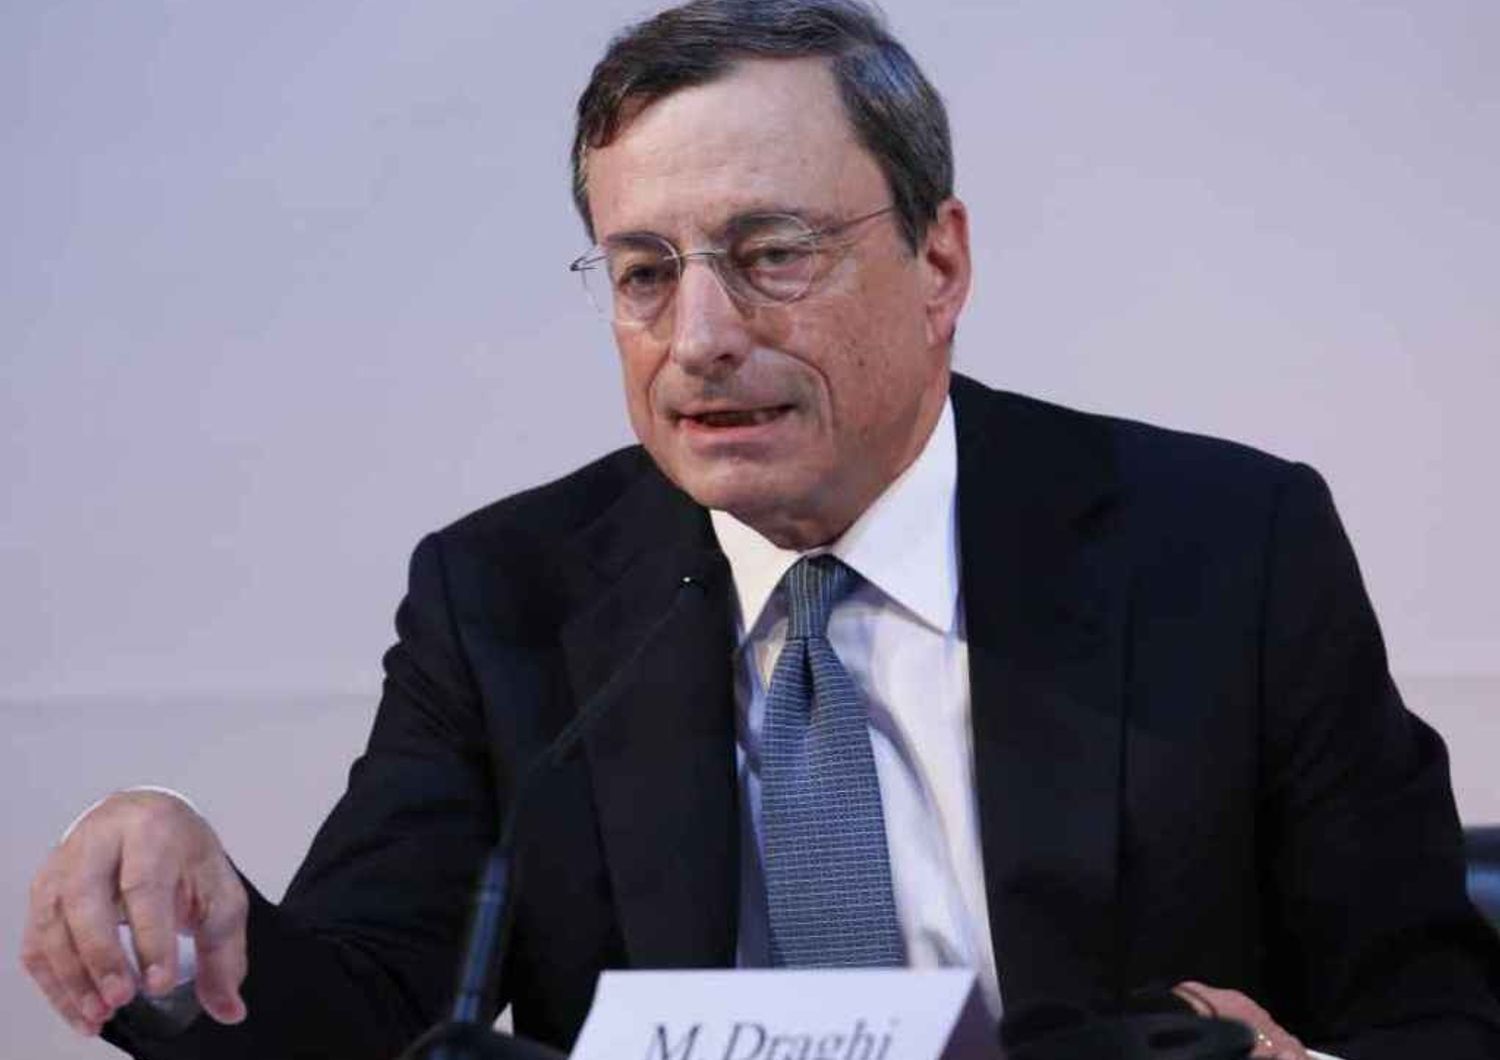 Borse crollano dopo vertice Bce Draghi: la crisi sembra infinita - Foto